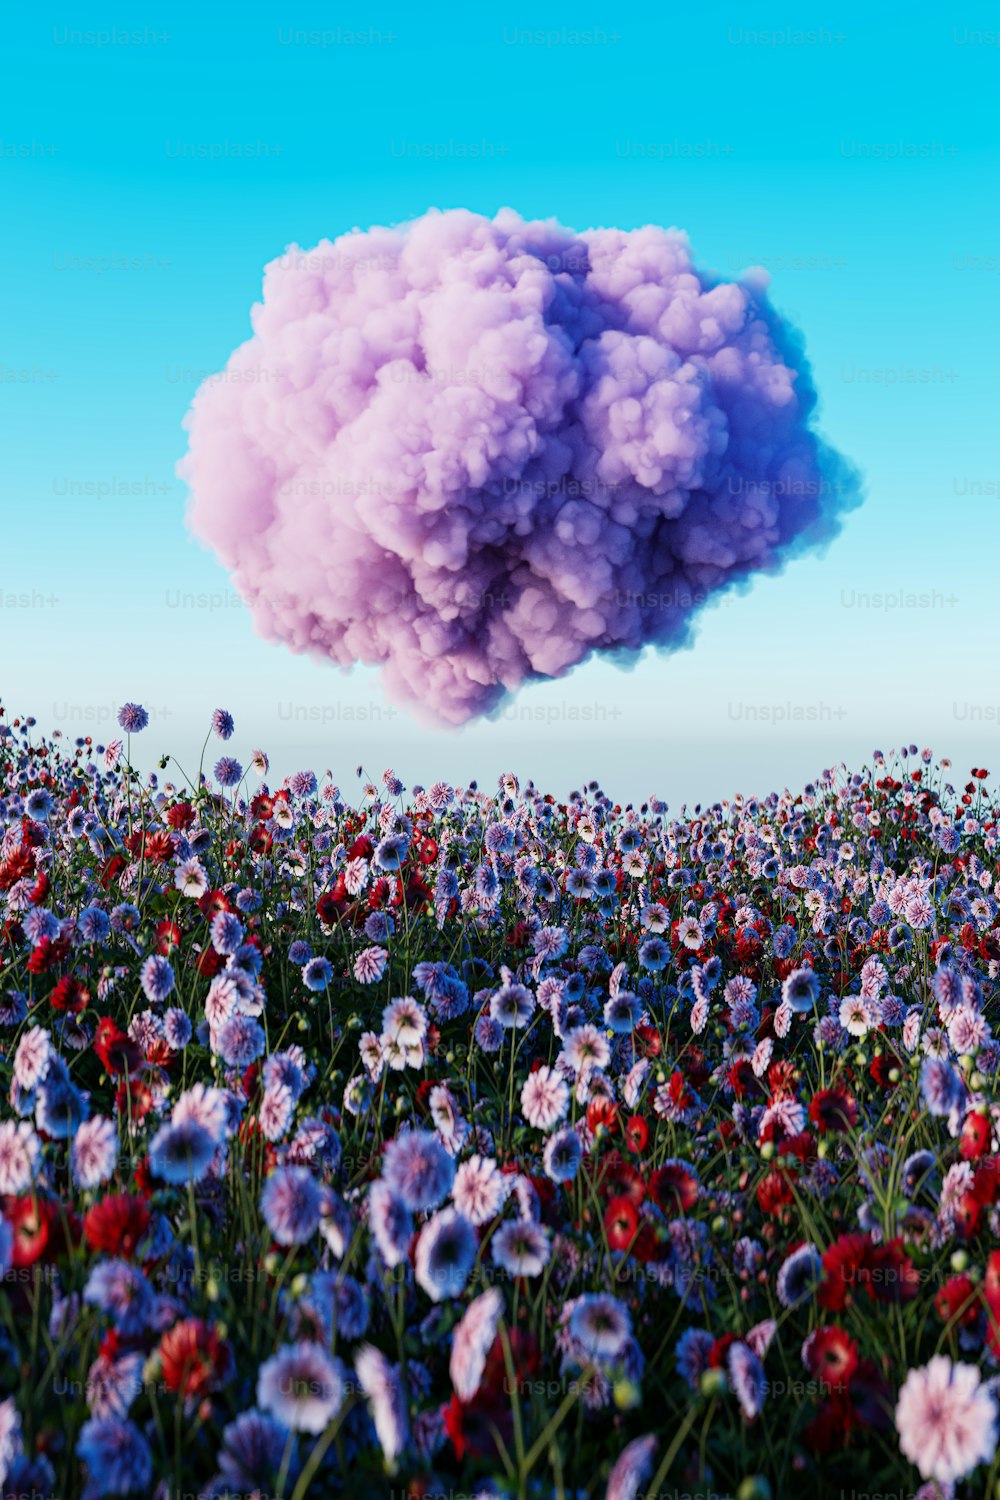 Un nuage de fumée flotte au-dessus d’un champ de fleurs